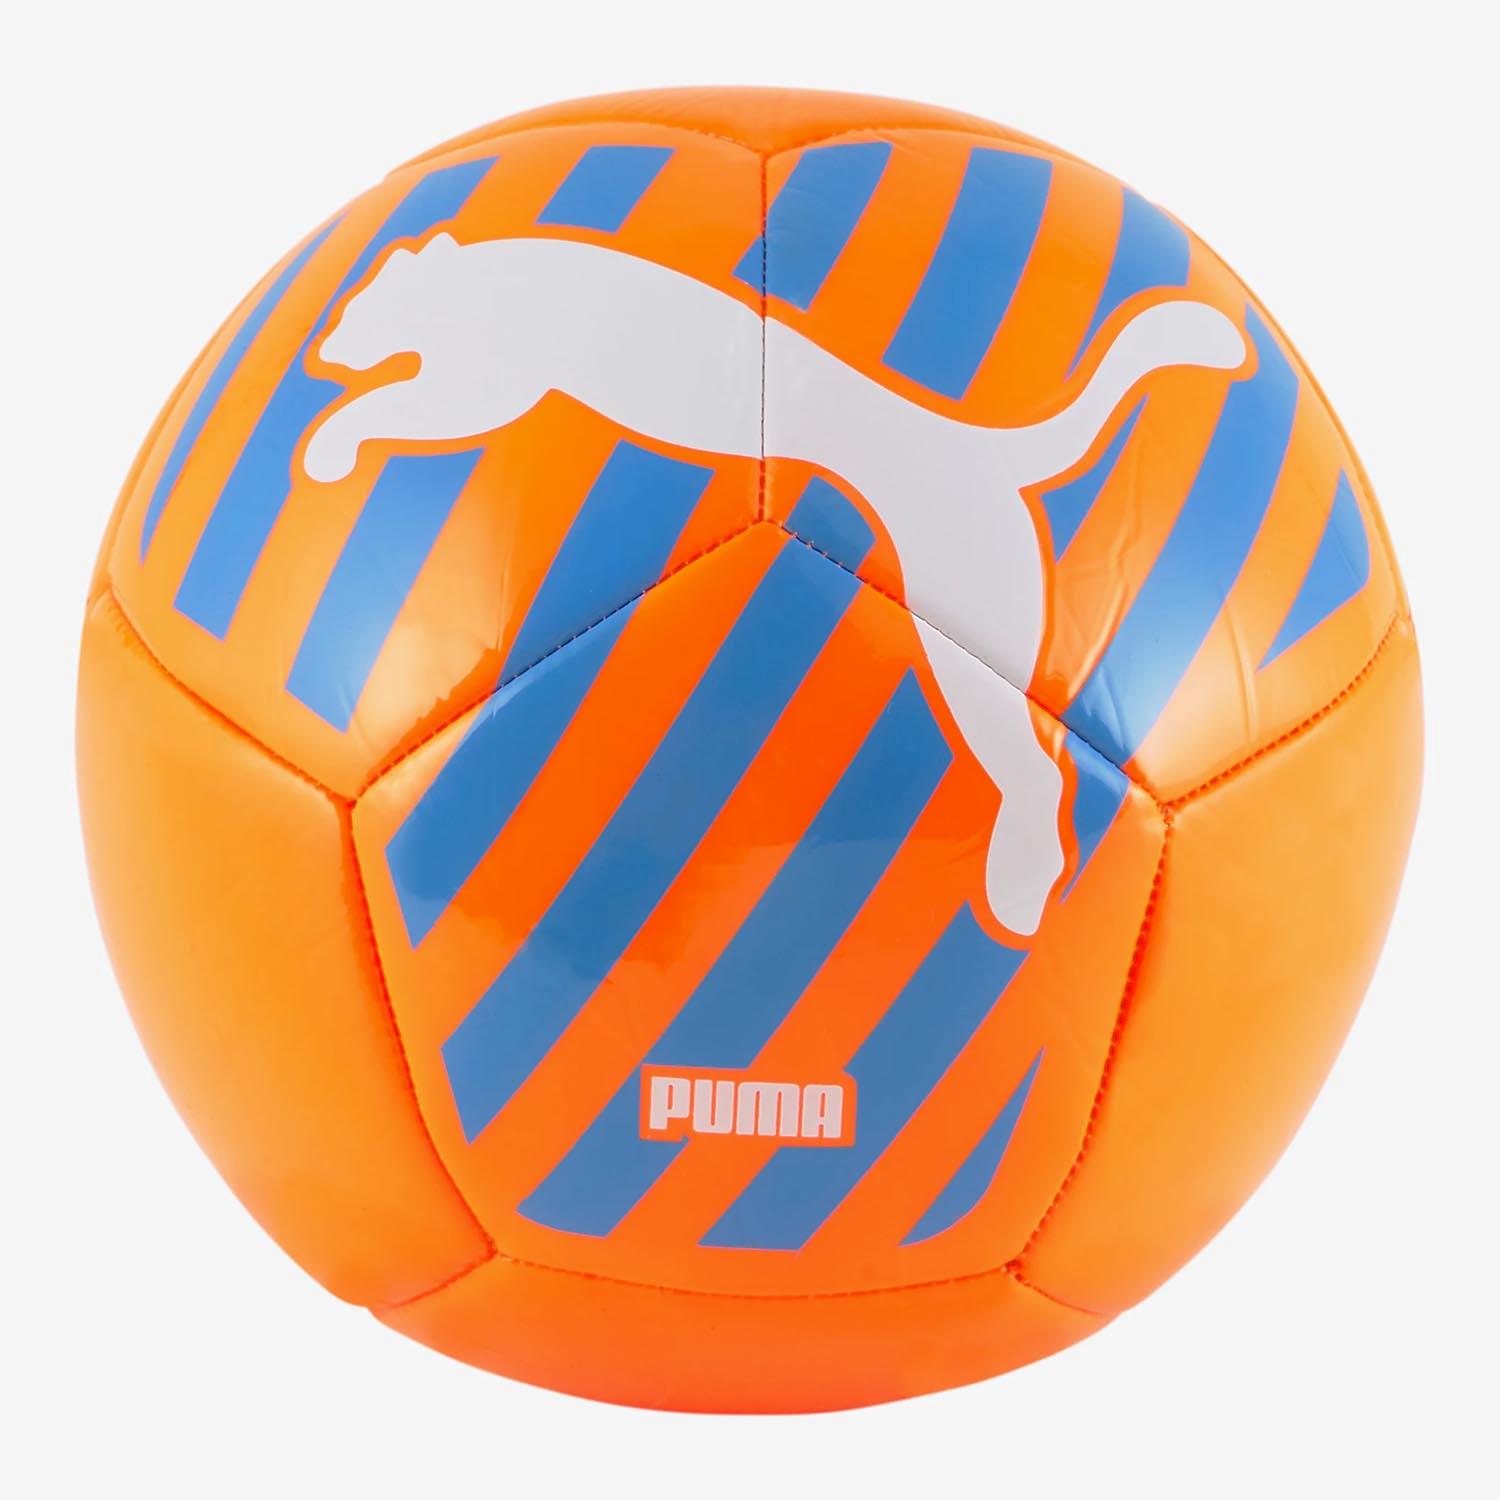 Descubre los mejores balones de fútbol